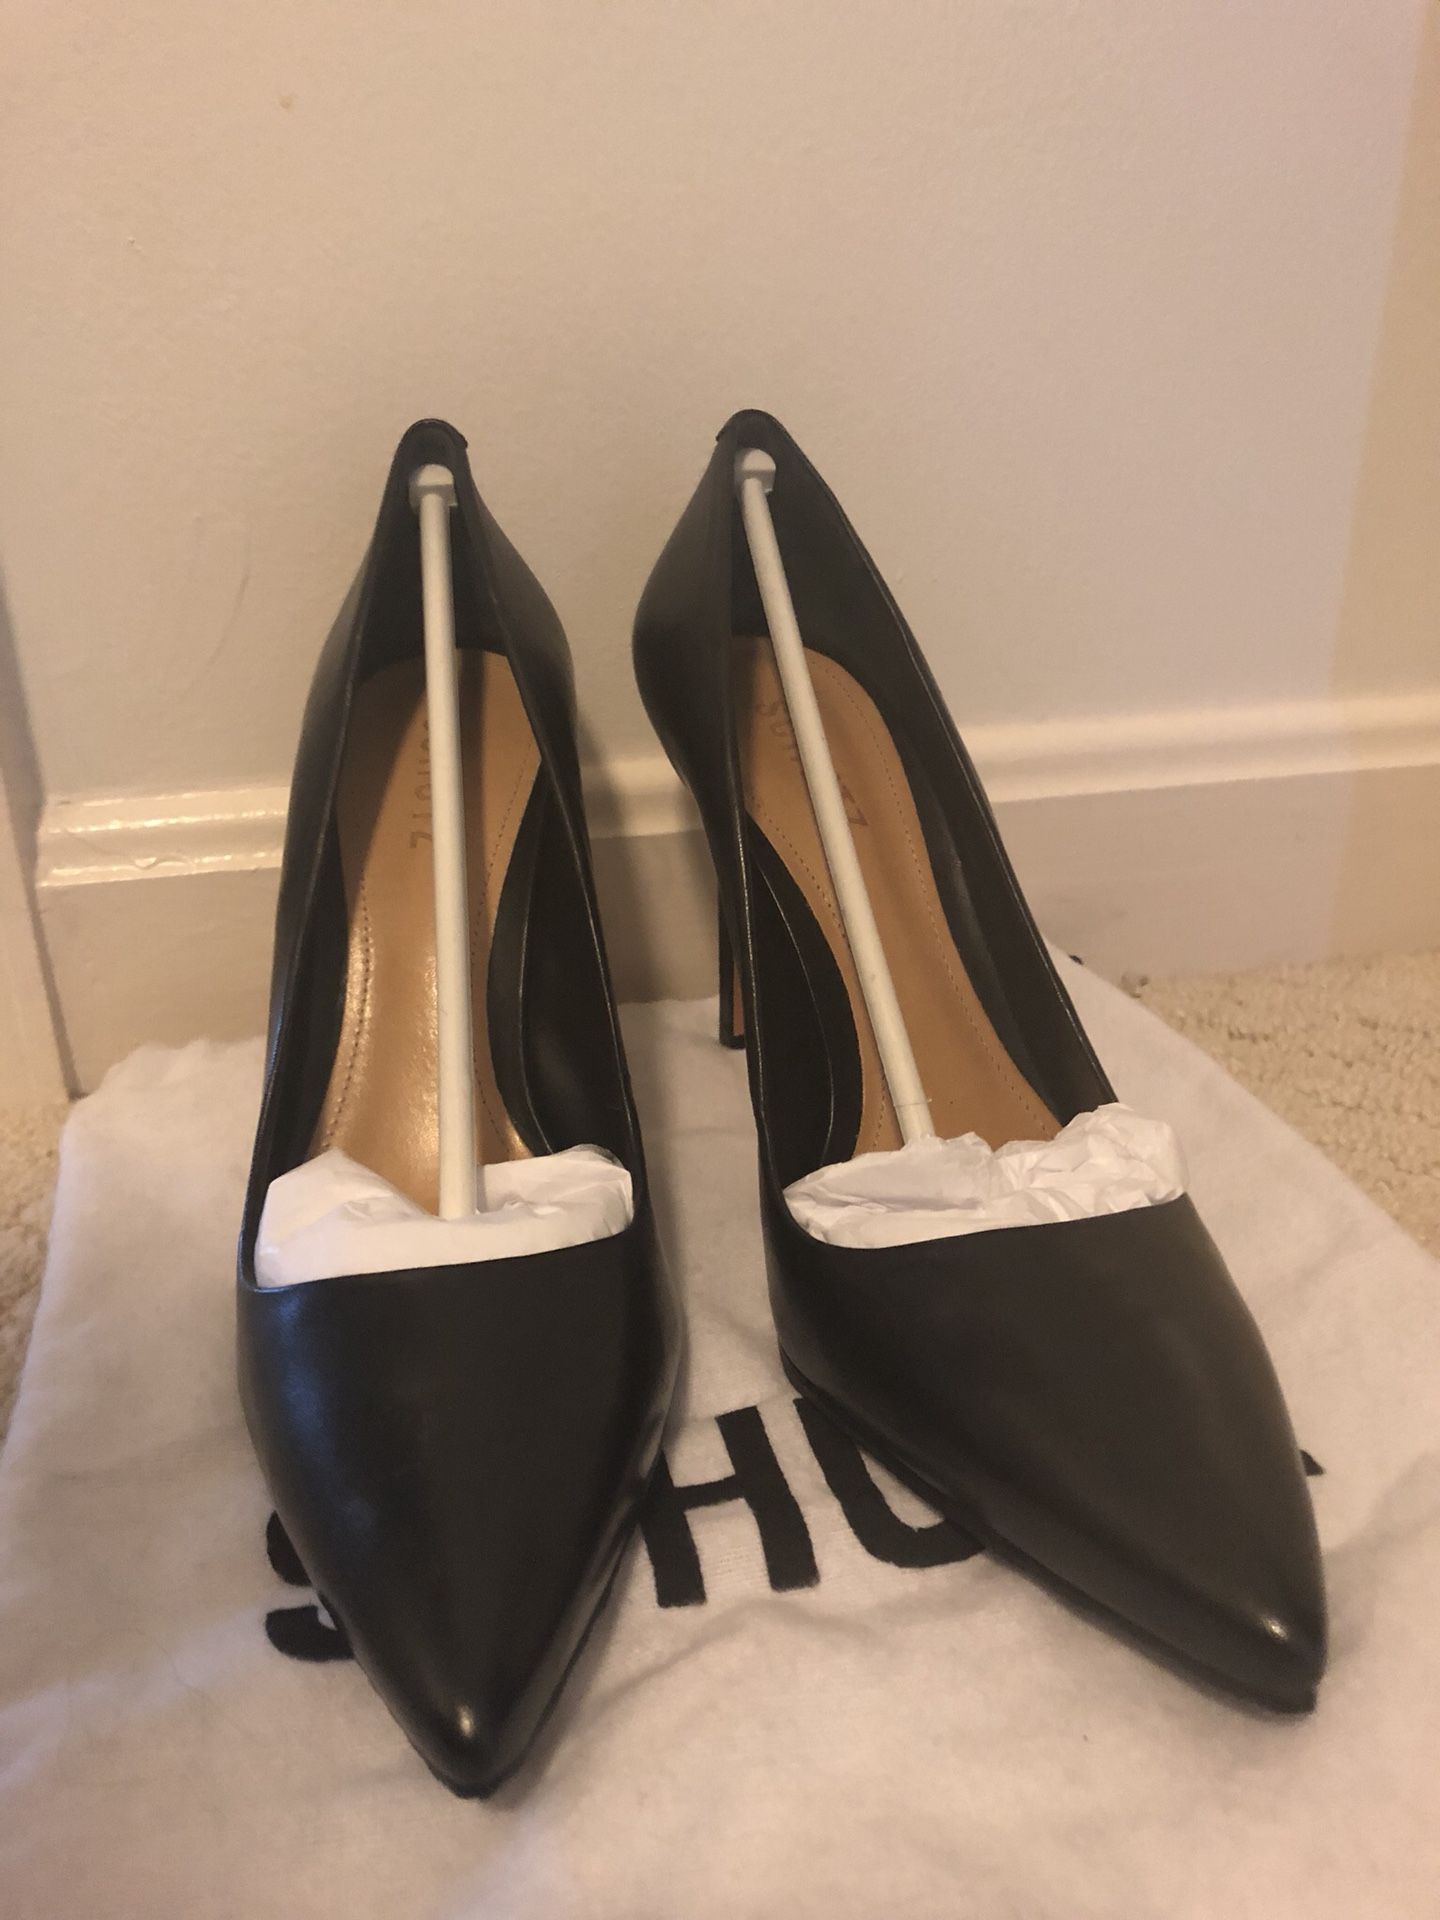 Schutz Shoes Farrah Black Pumps, Size 9.5